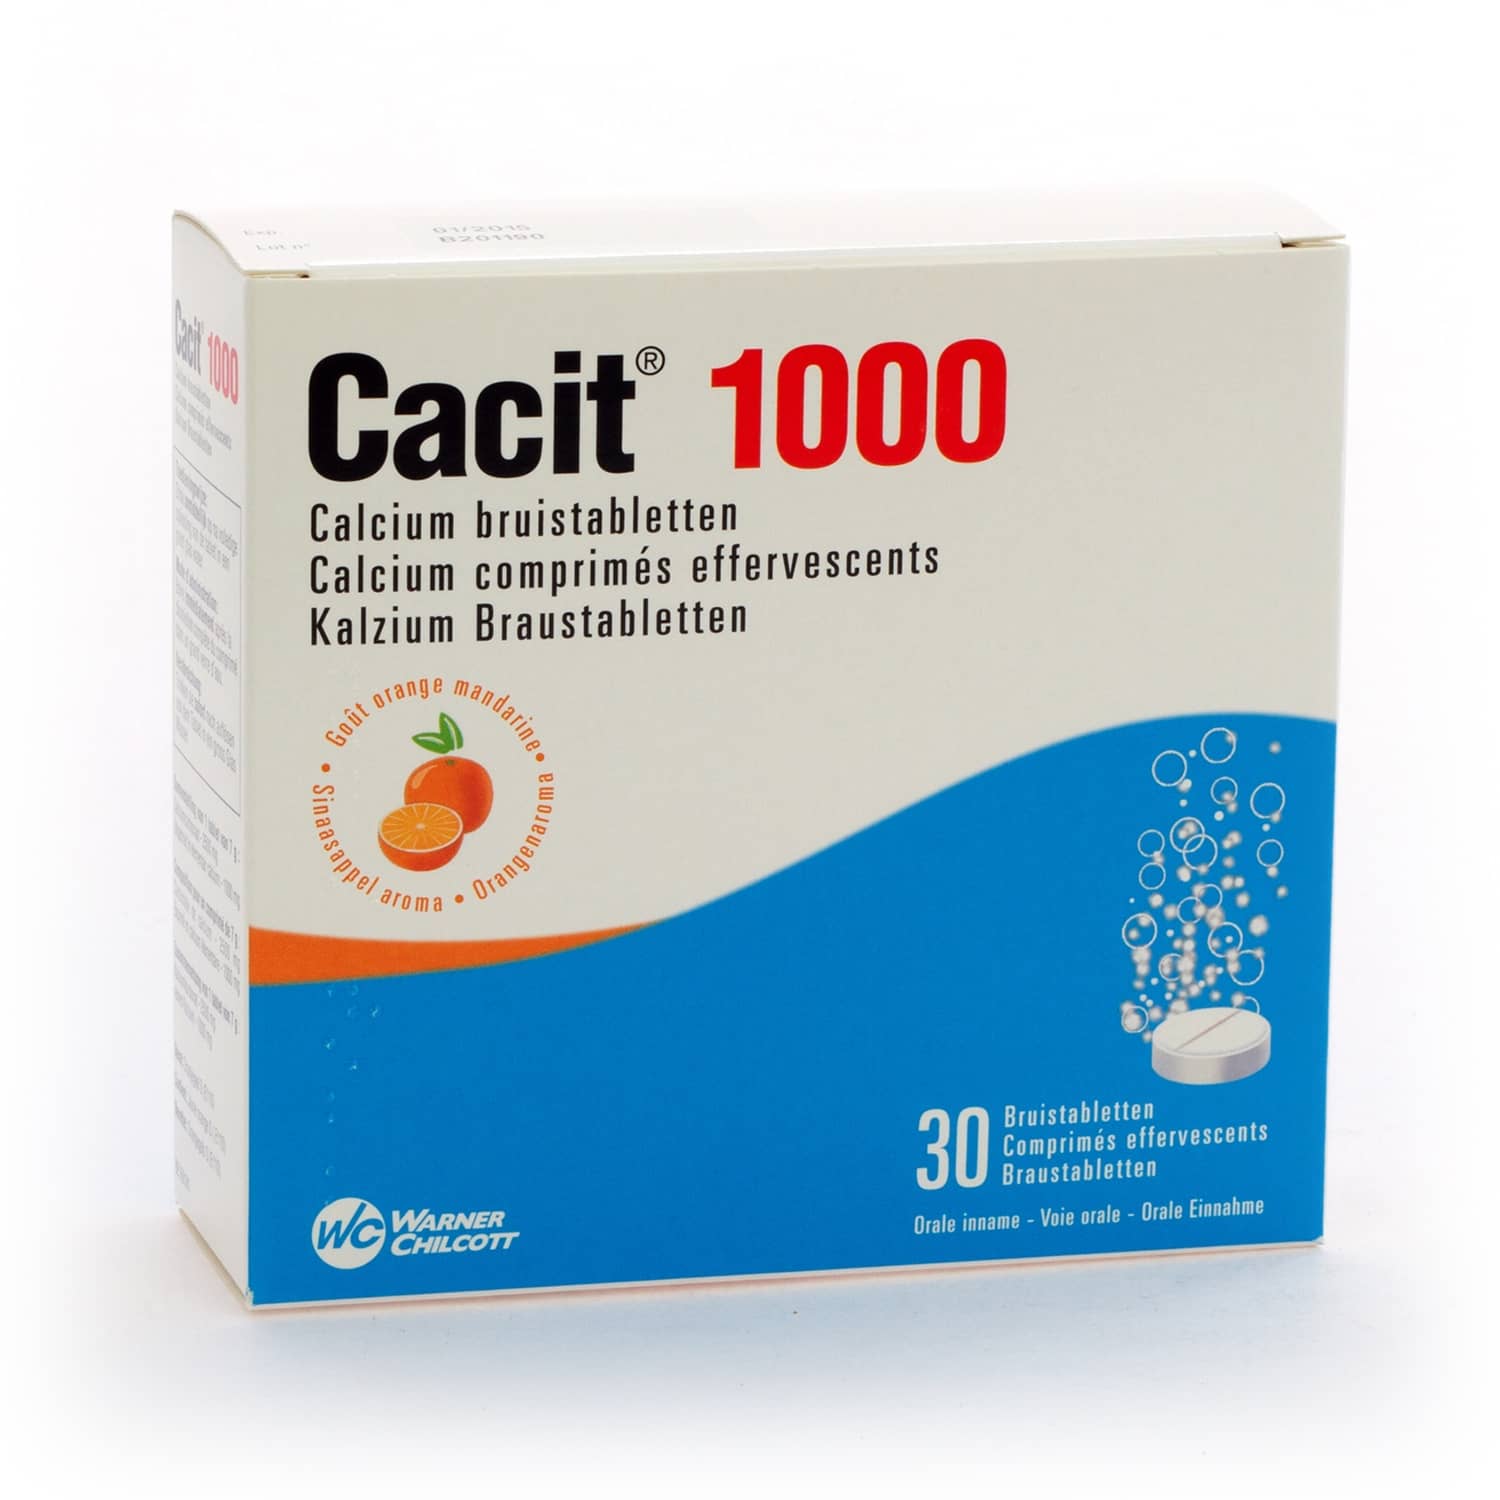 Cacit 1000